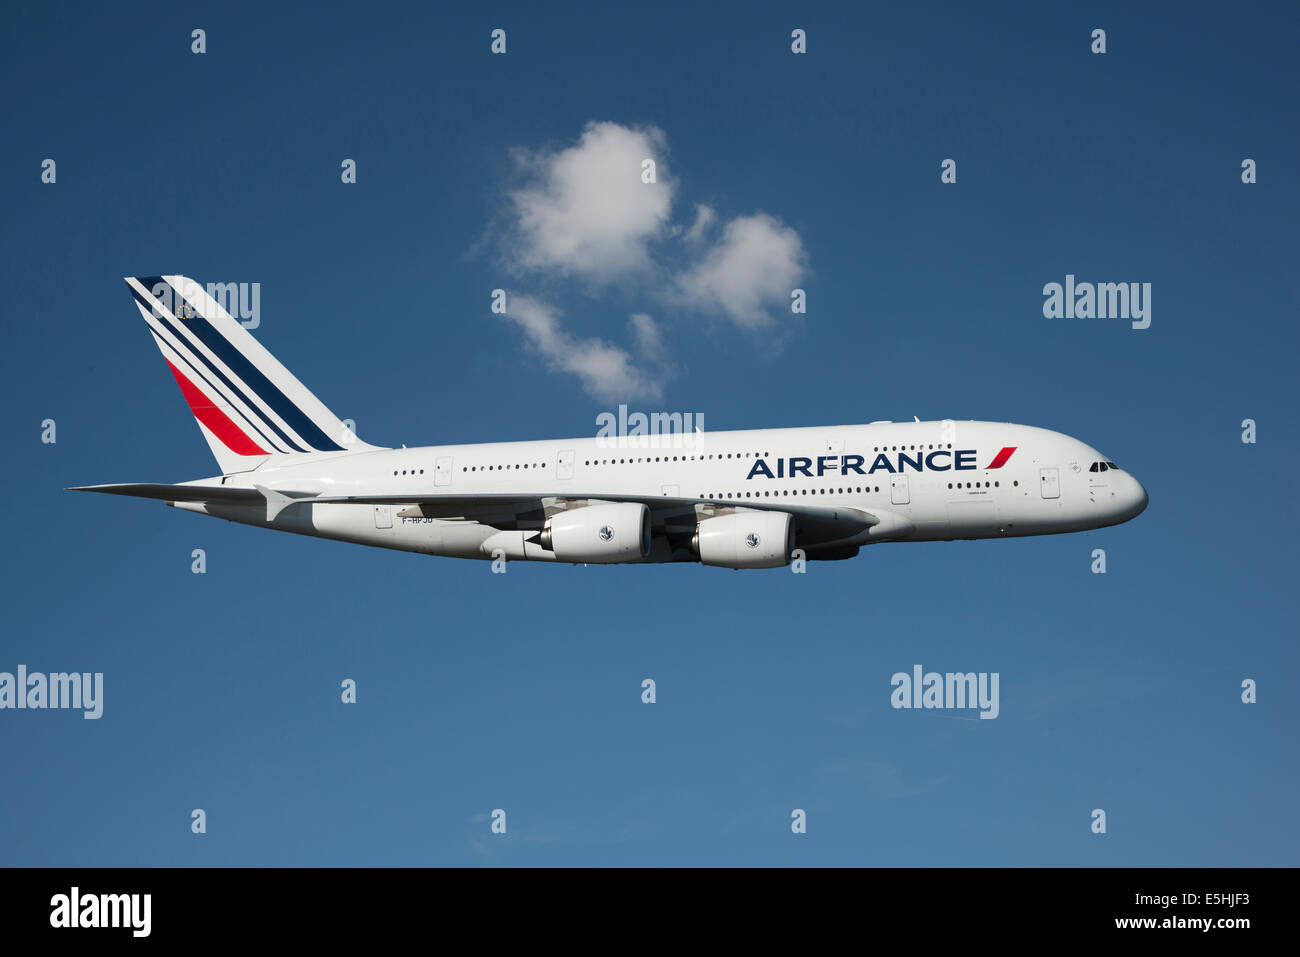 Airfrance immagini e fotografie stock ad alta risoluzione - Alamy